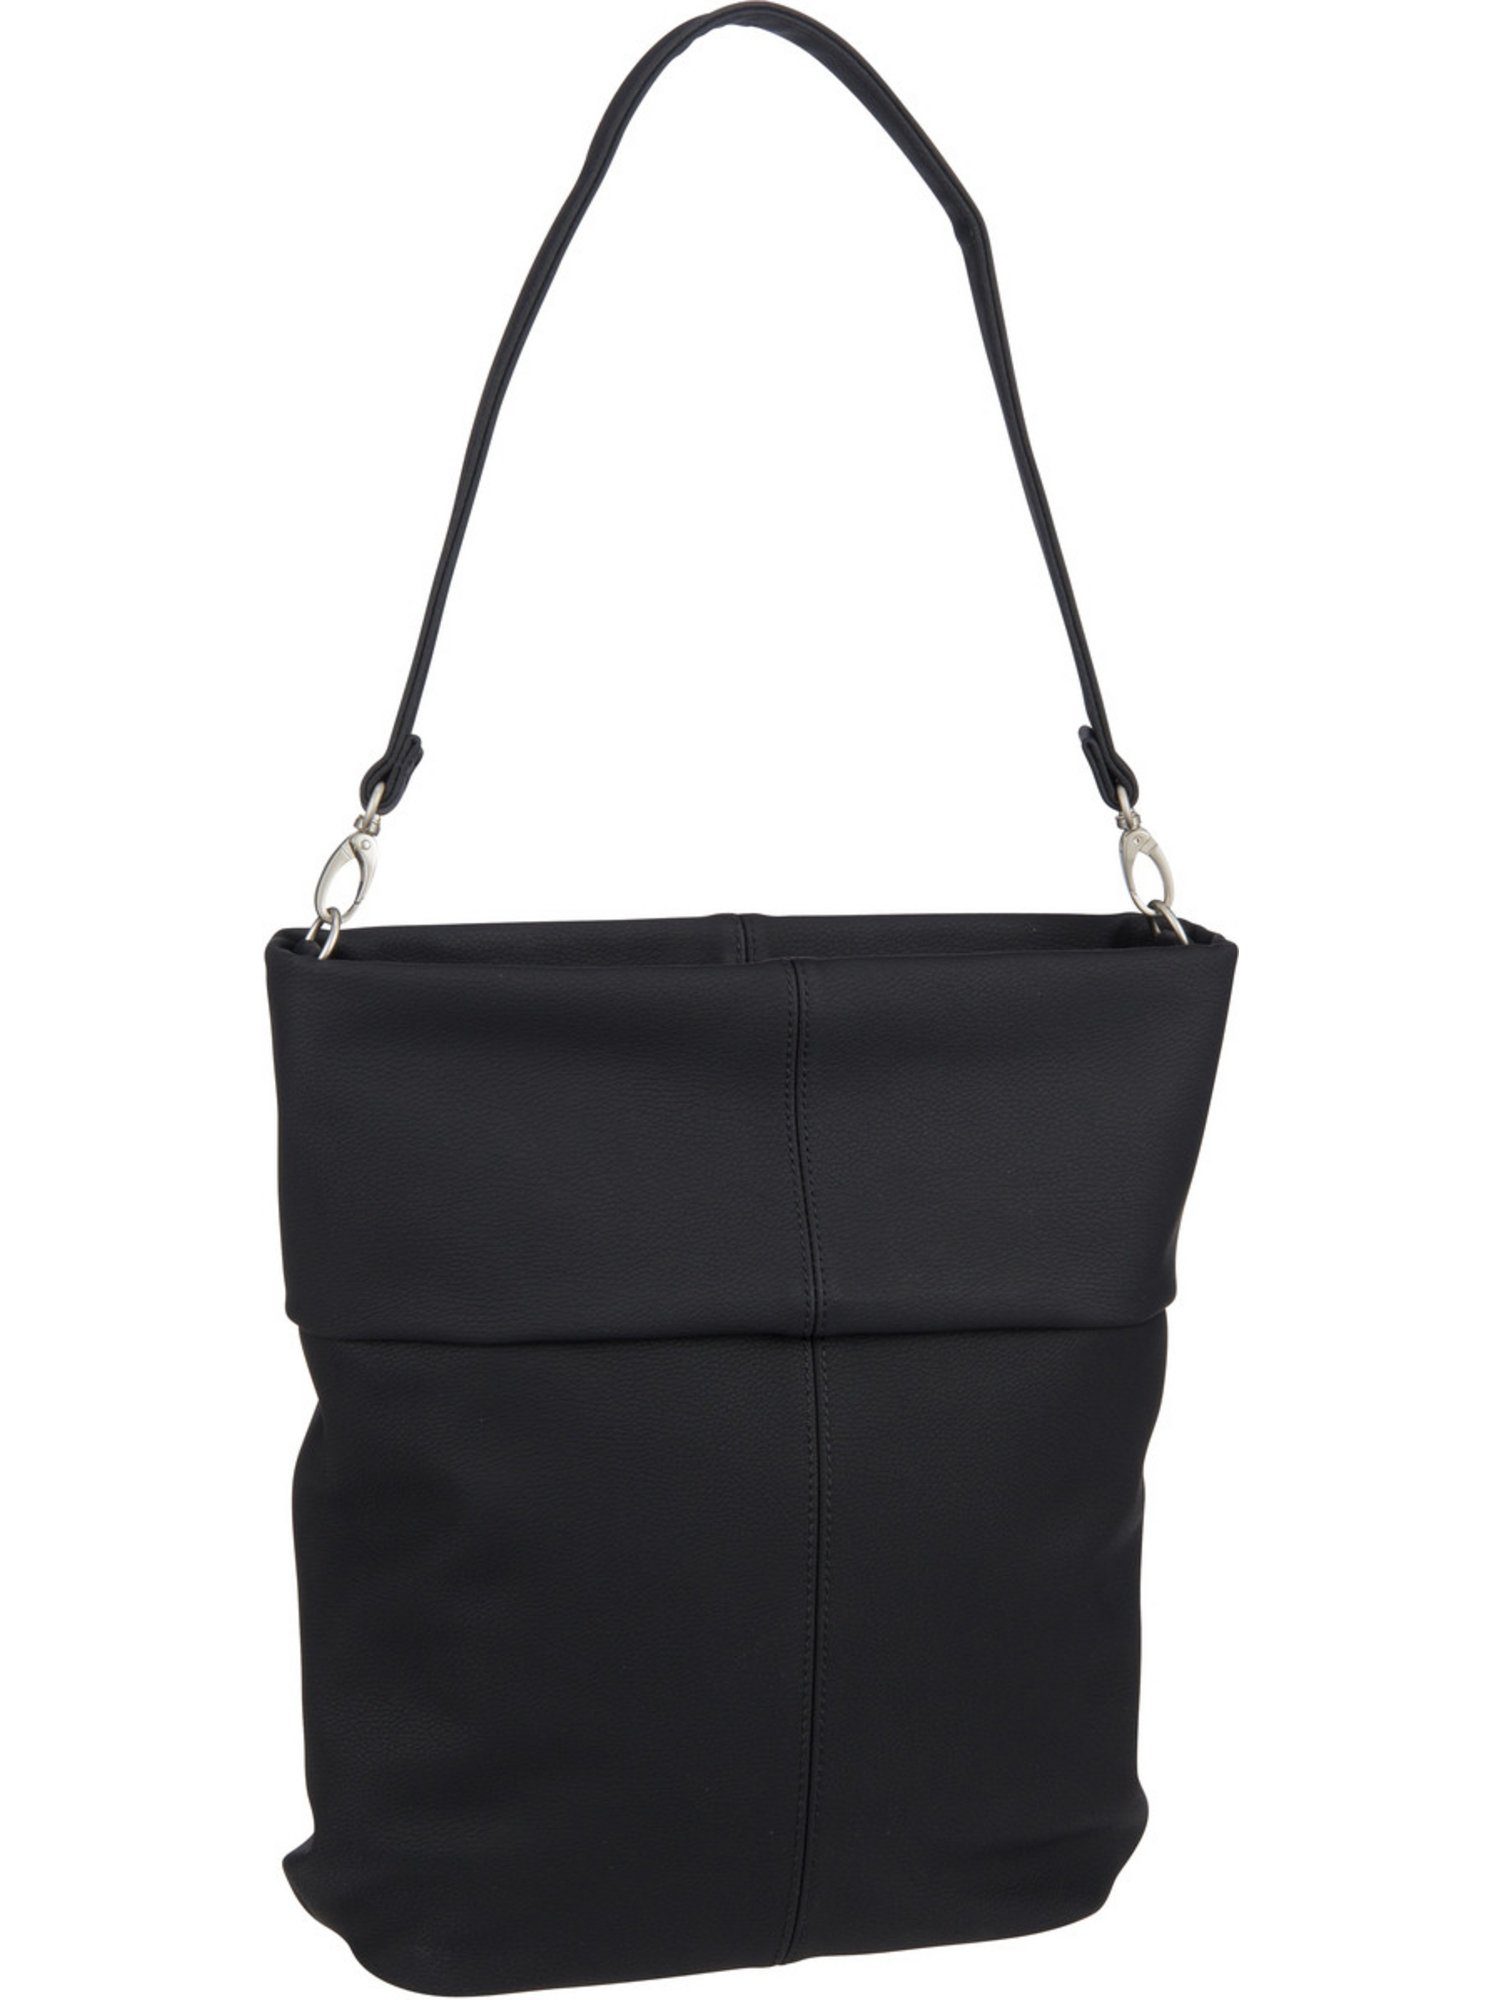 Handtasche Zwei Hobo M12, Mademoiselle Bag Nubuk/Black